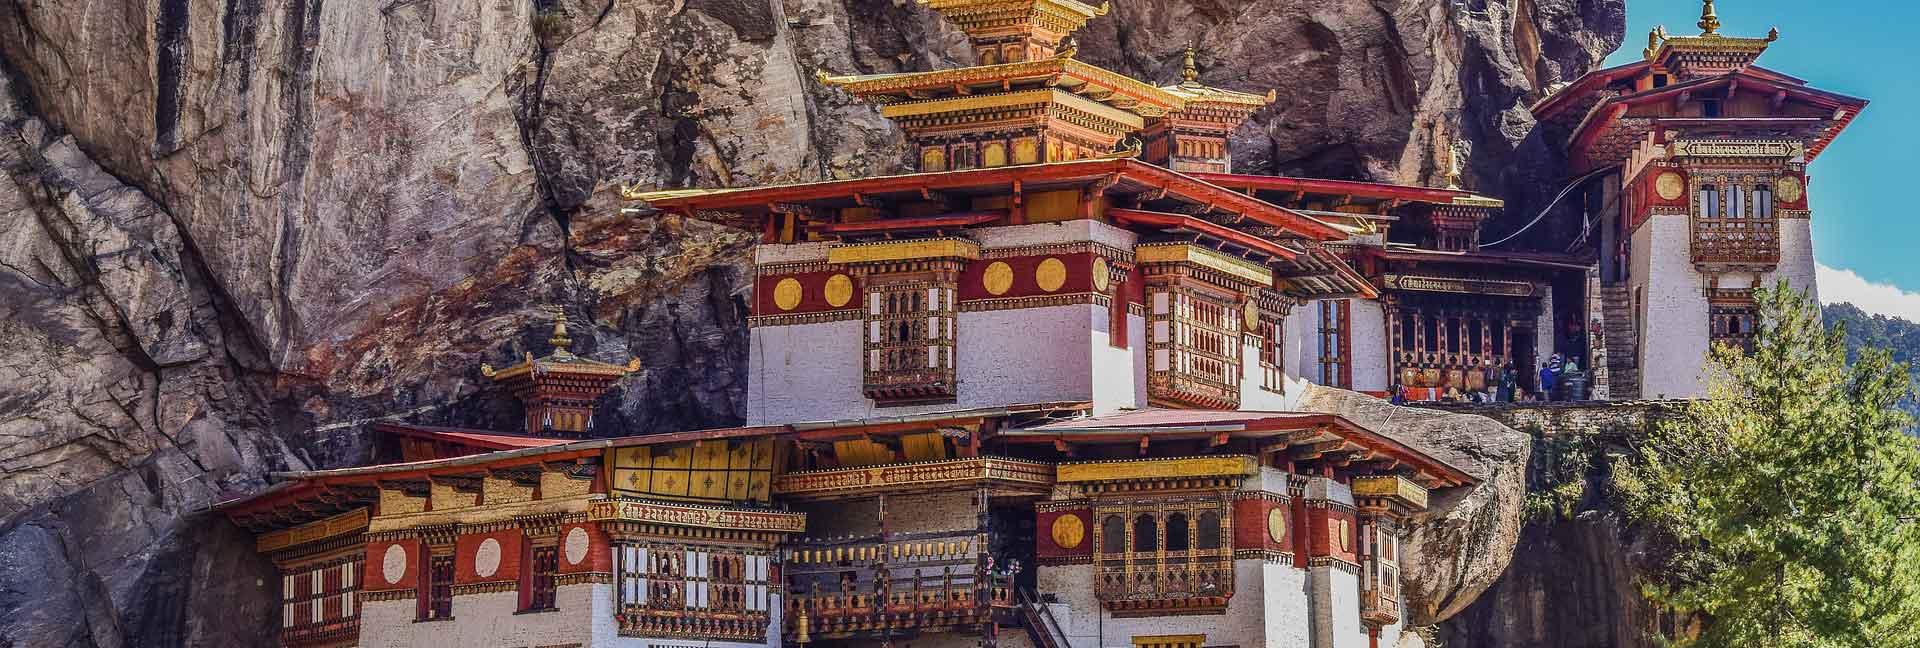 Bhutan & Nepal con Extension a Phokara y P.N. Chitwan